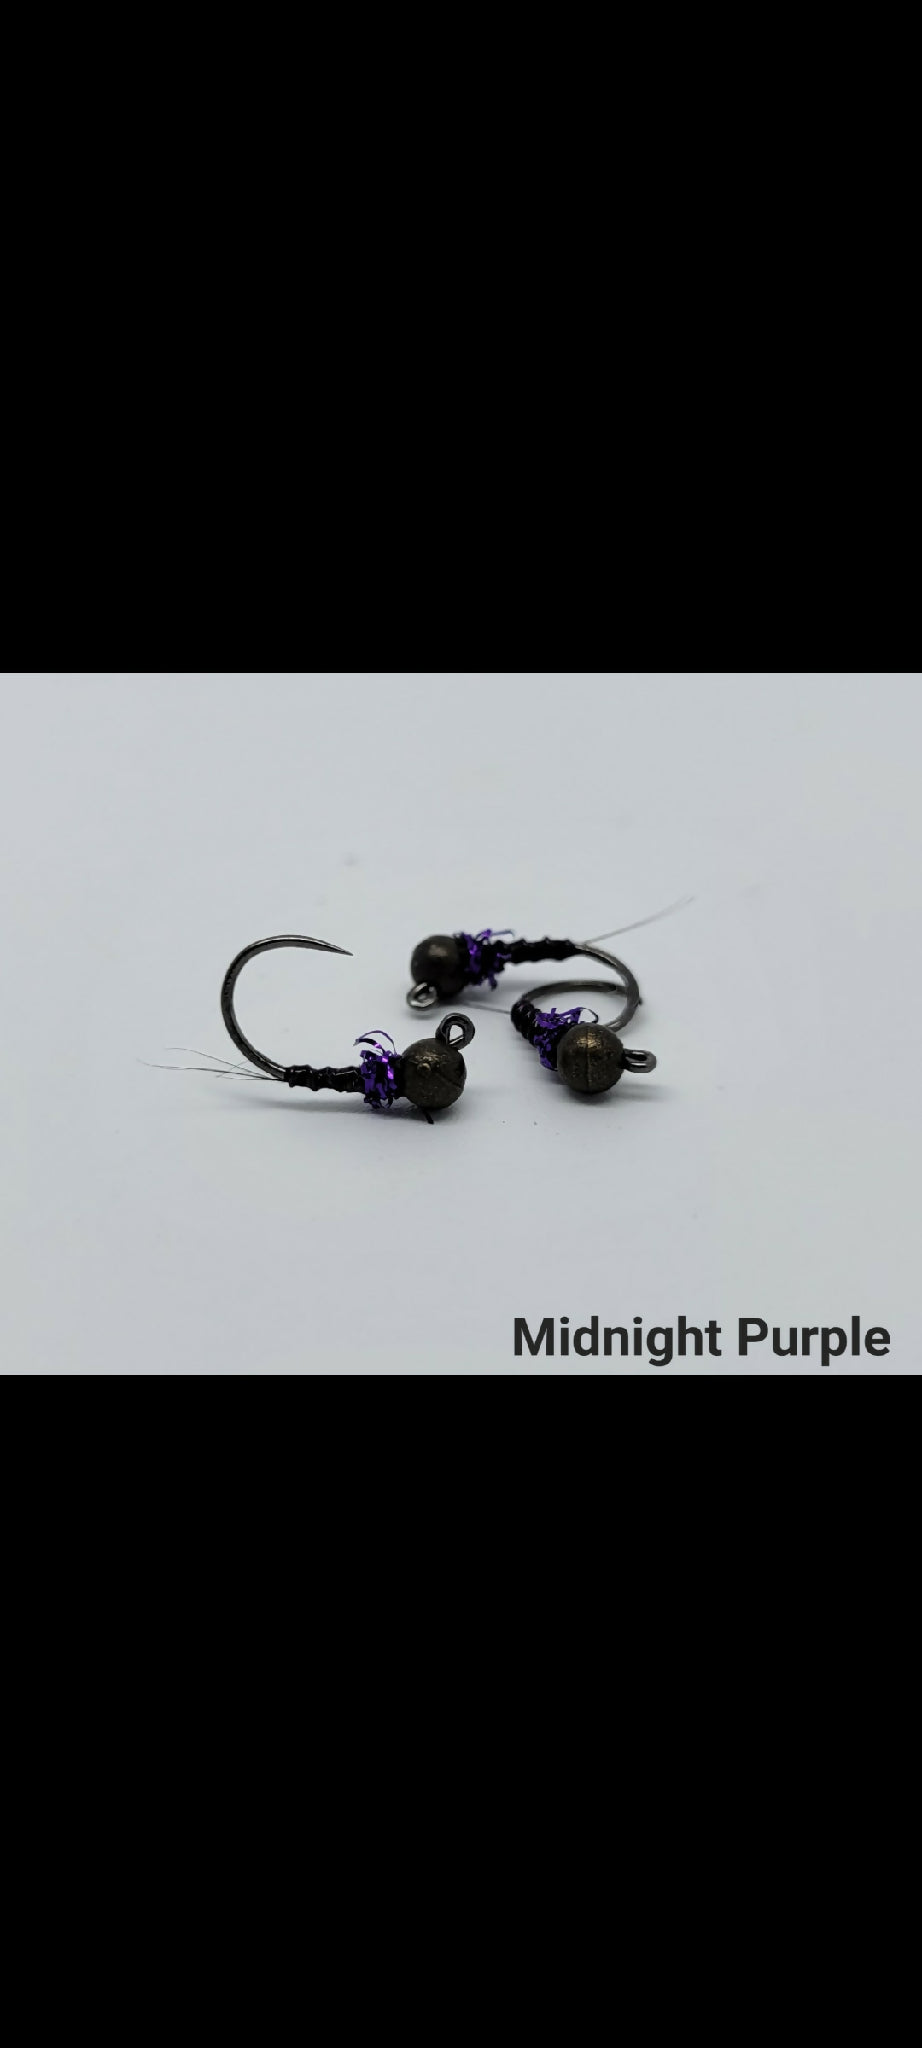 Thread Frenchie - Midnight Purple